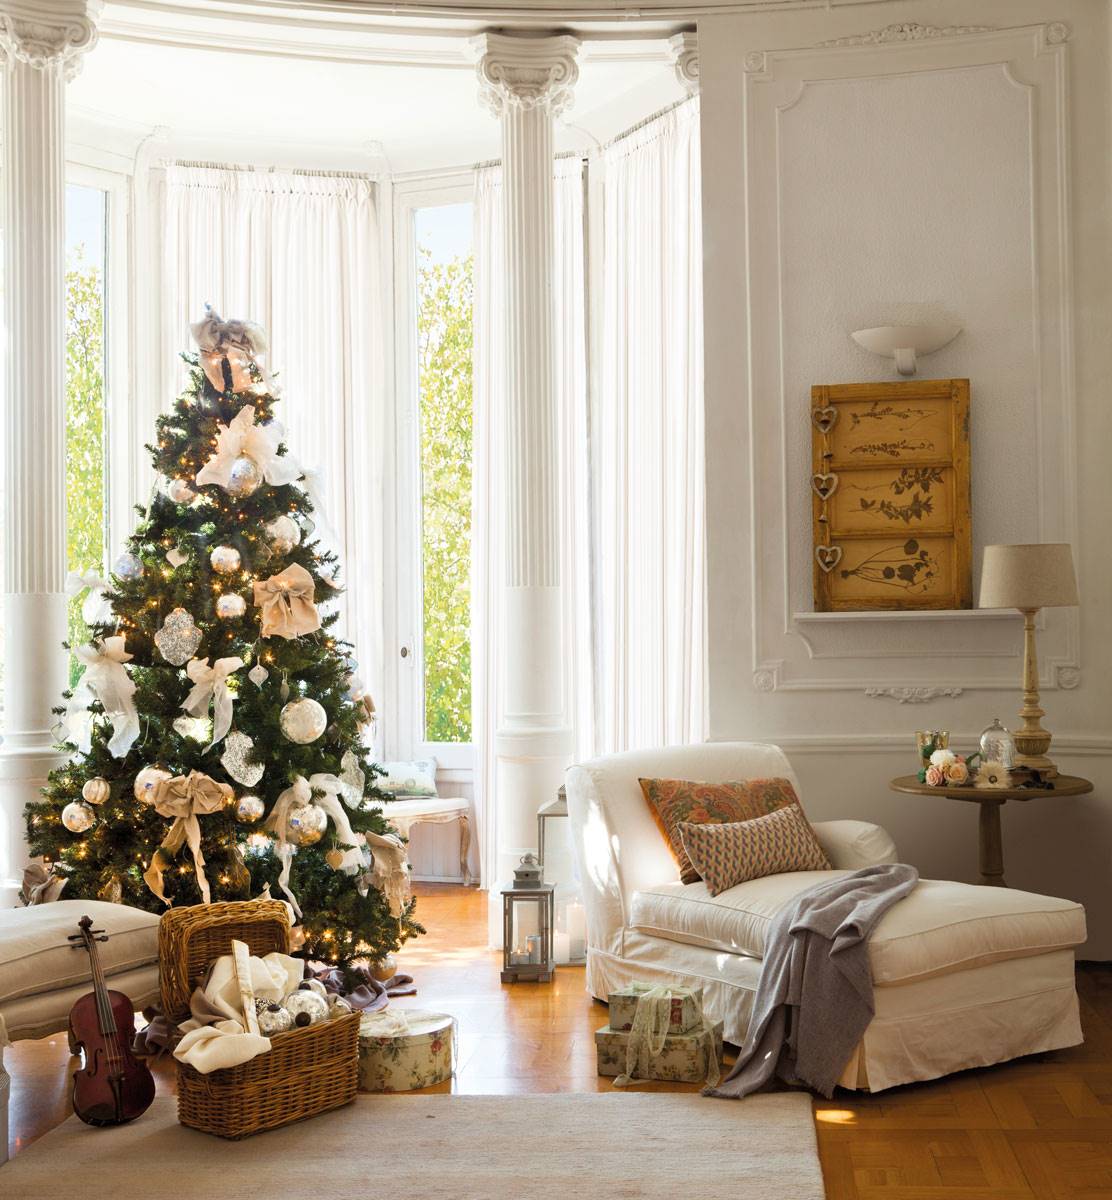 Salón elegante con molduras blancas, chaise longue, cesta y violín en el suelo y árbol de. Navidad decorado con bolas plateadas y lazos.